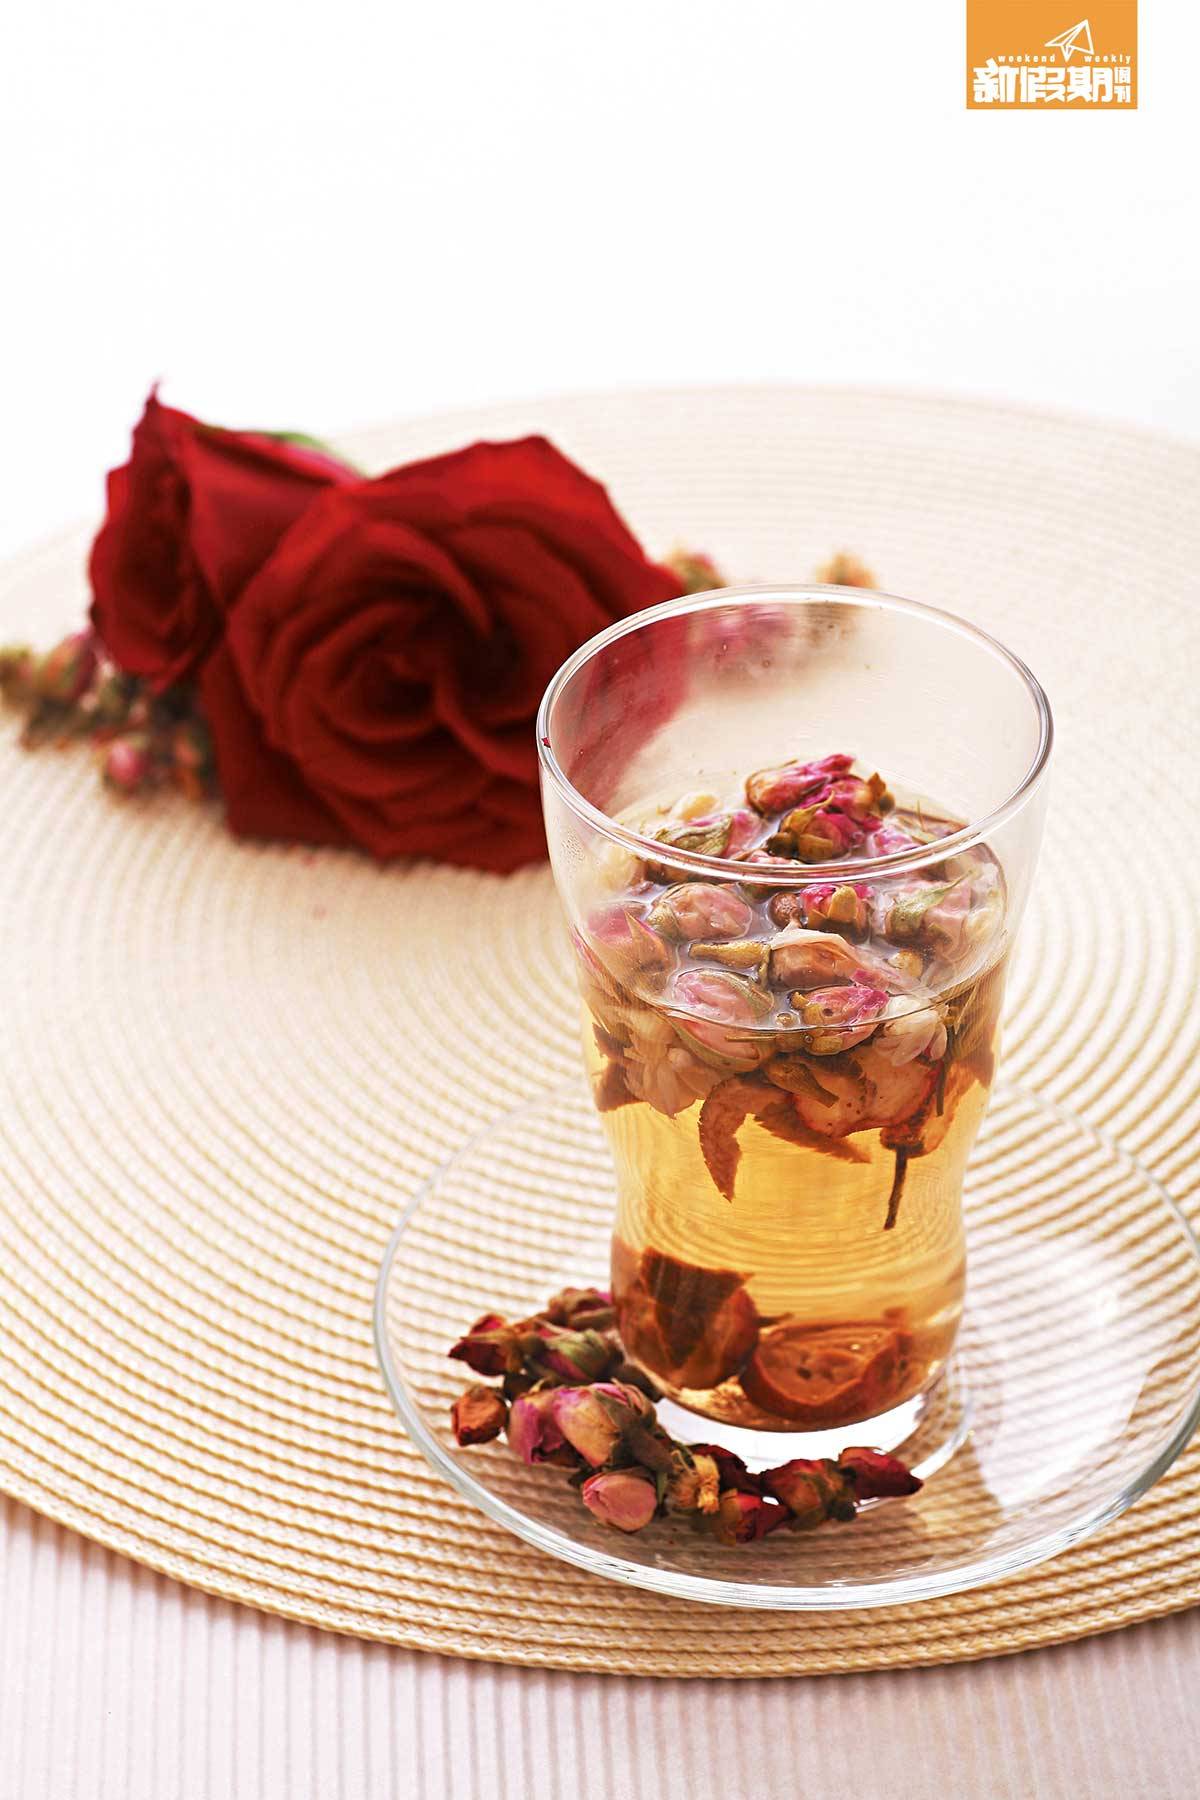 可泡焗玫瑰花茶或洋甘菊薄荷茶，平復心情。